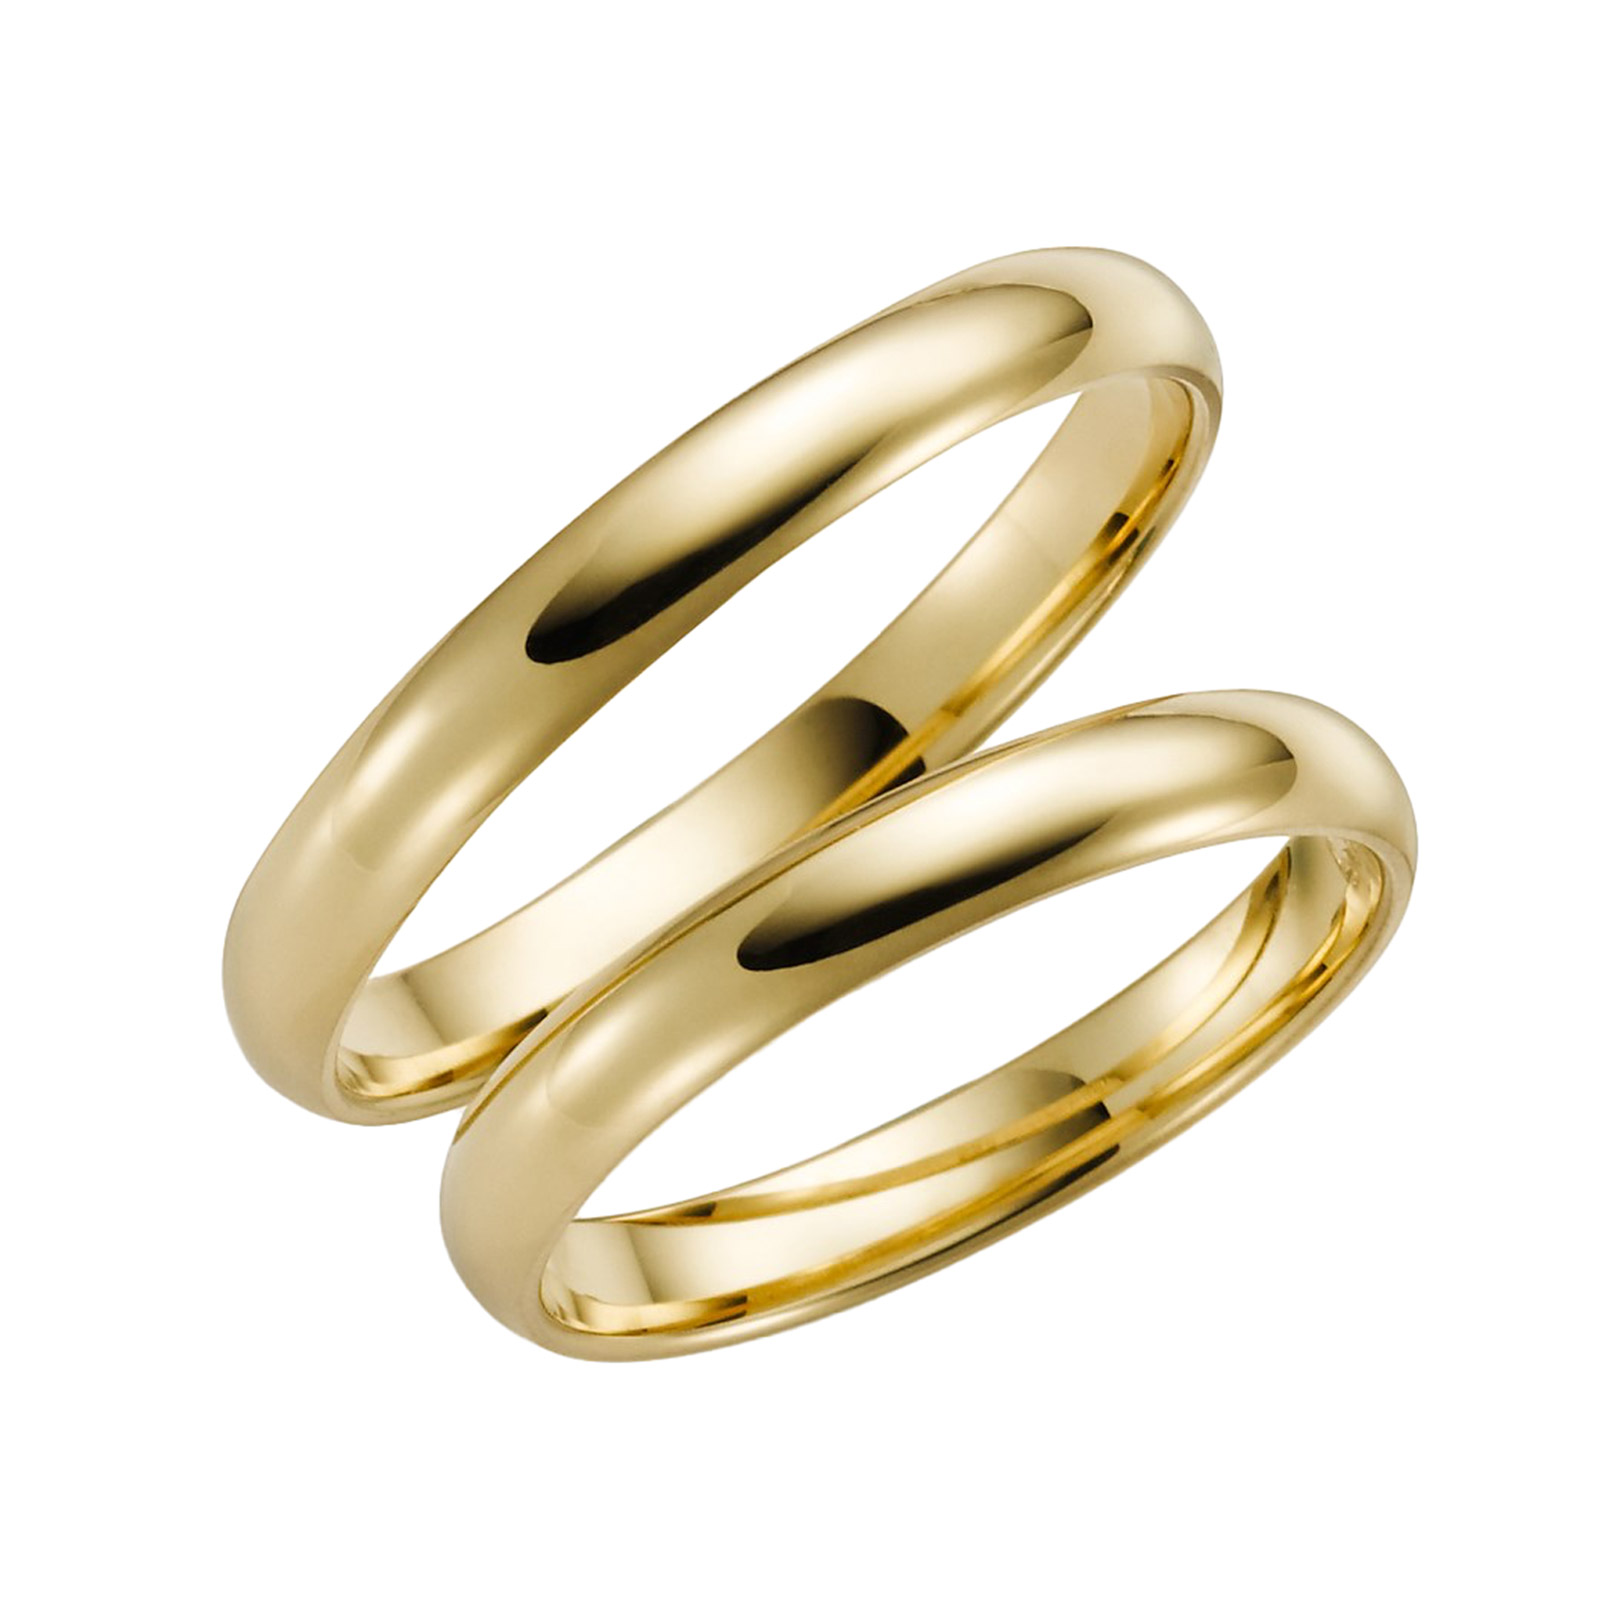 Förlovningsring 18k guld - Kupad 3 mm